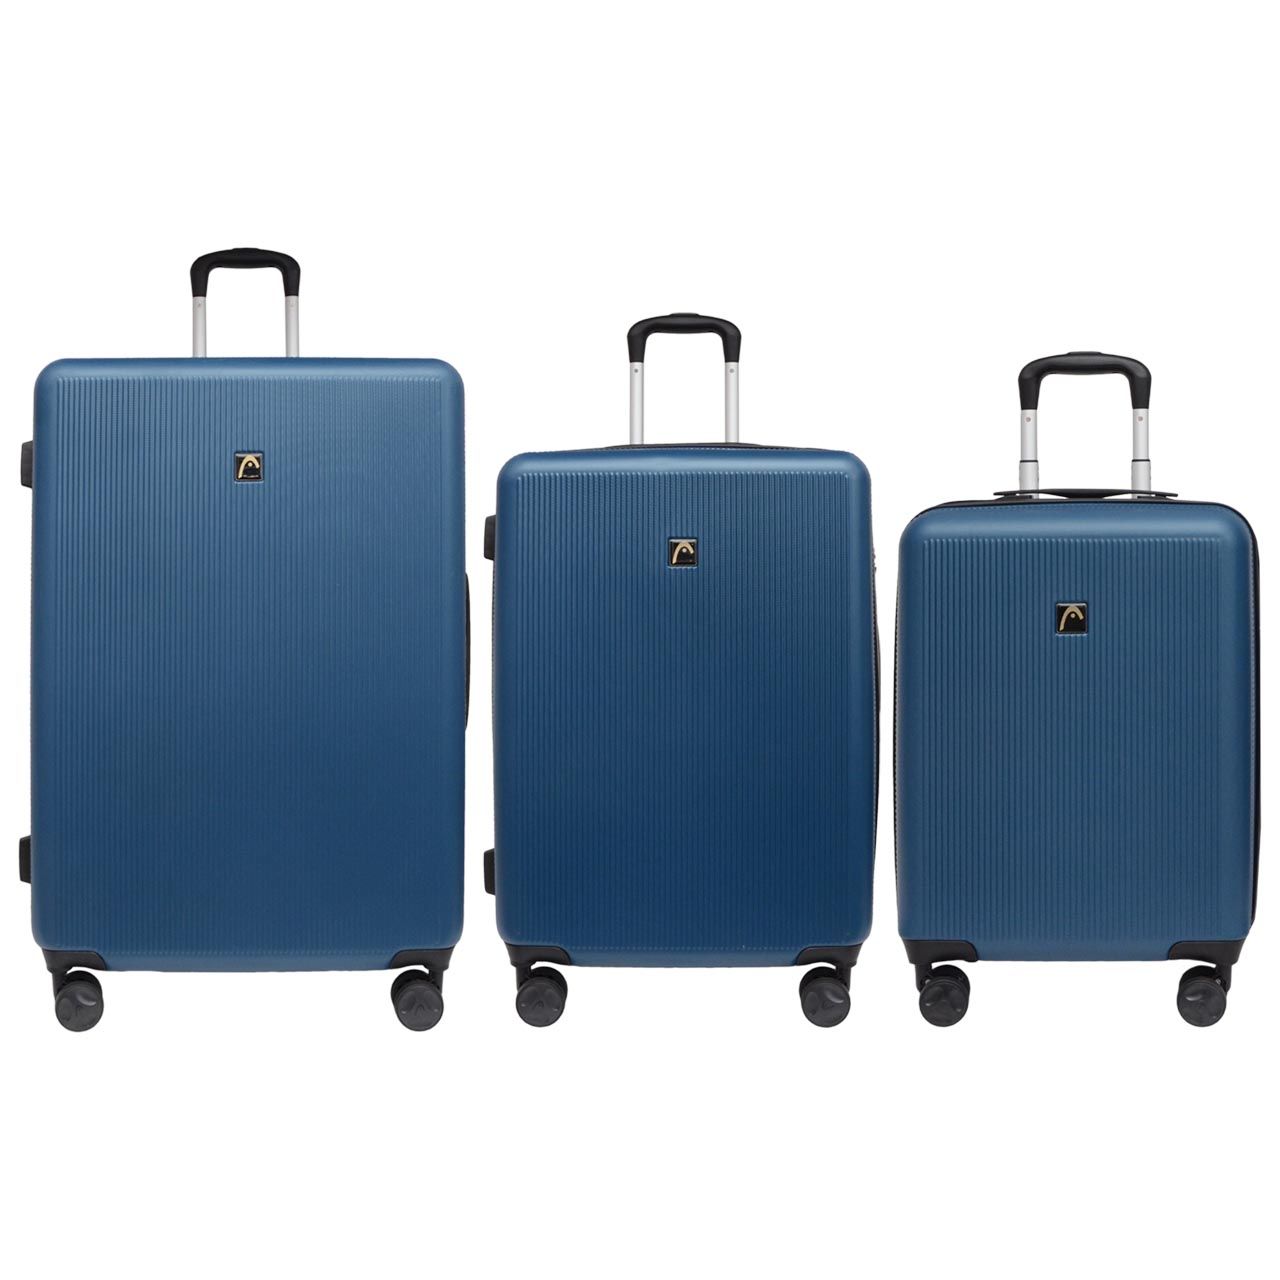 مجموعه سه عددی چمدان هد مدل HL 006 -  - 5